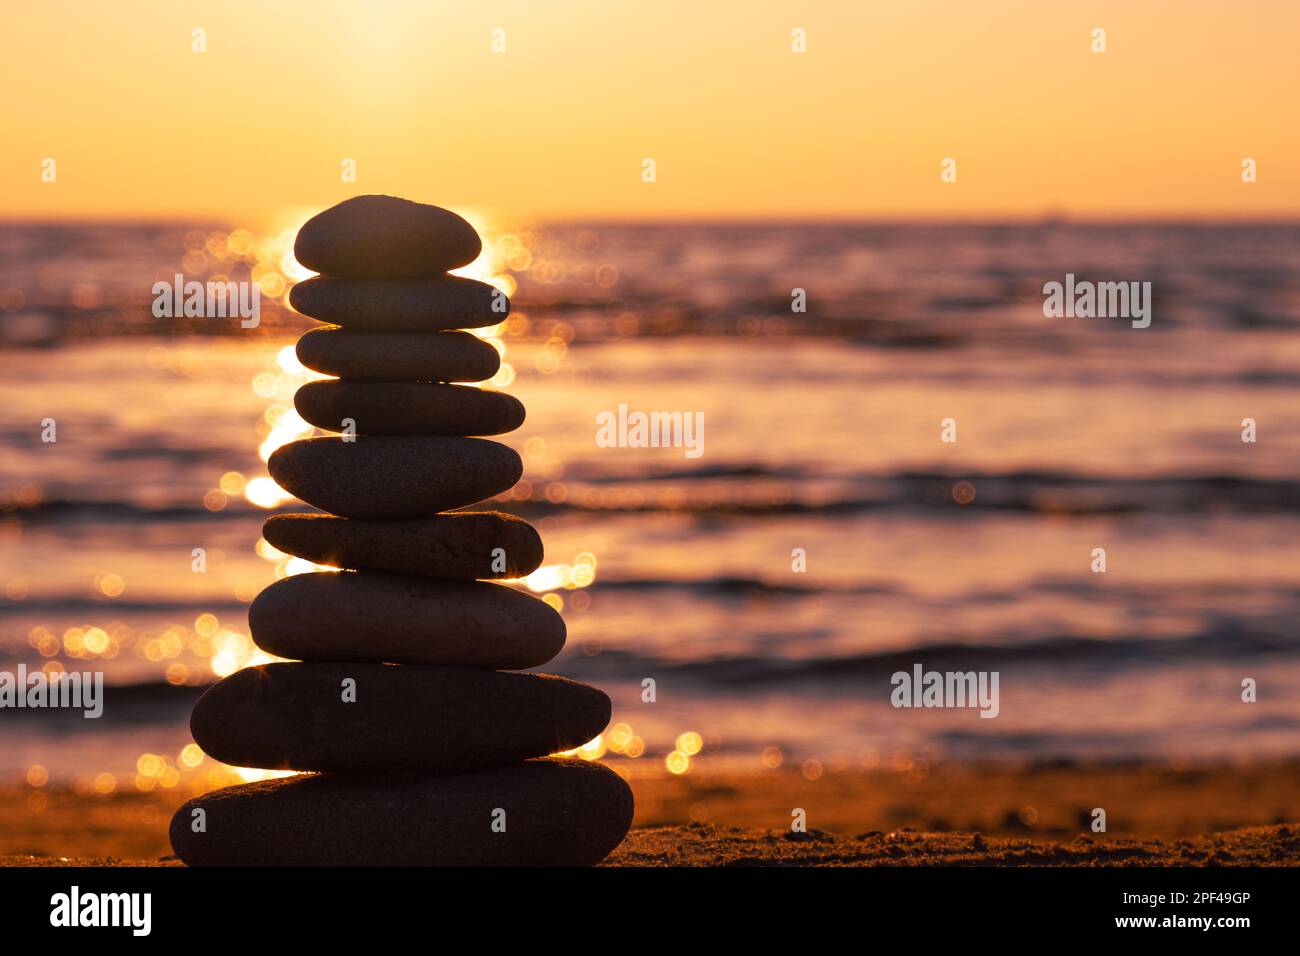 Profilo equilibrato piramidale di ciottoli sulla spiaggia al tramonto con Mare sullo sfondo. Pietre Zen sulla spiaggia di mare, meditazione, spa, armonia, calma. Foto Stock